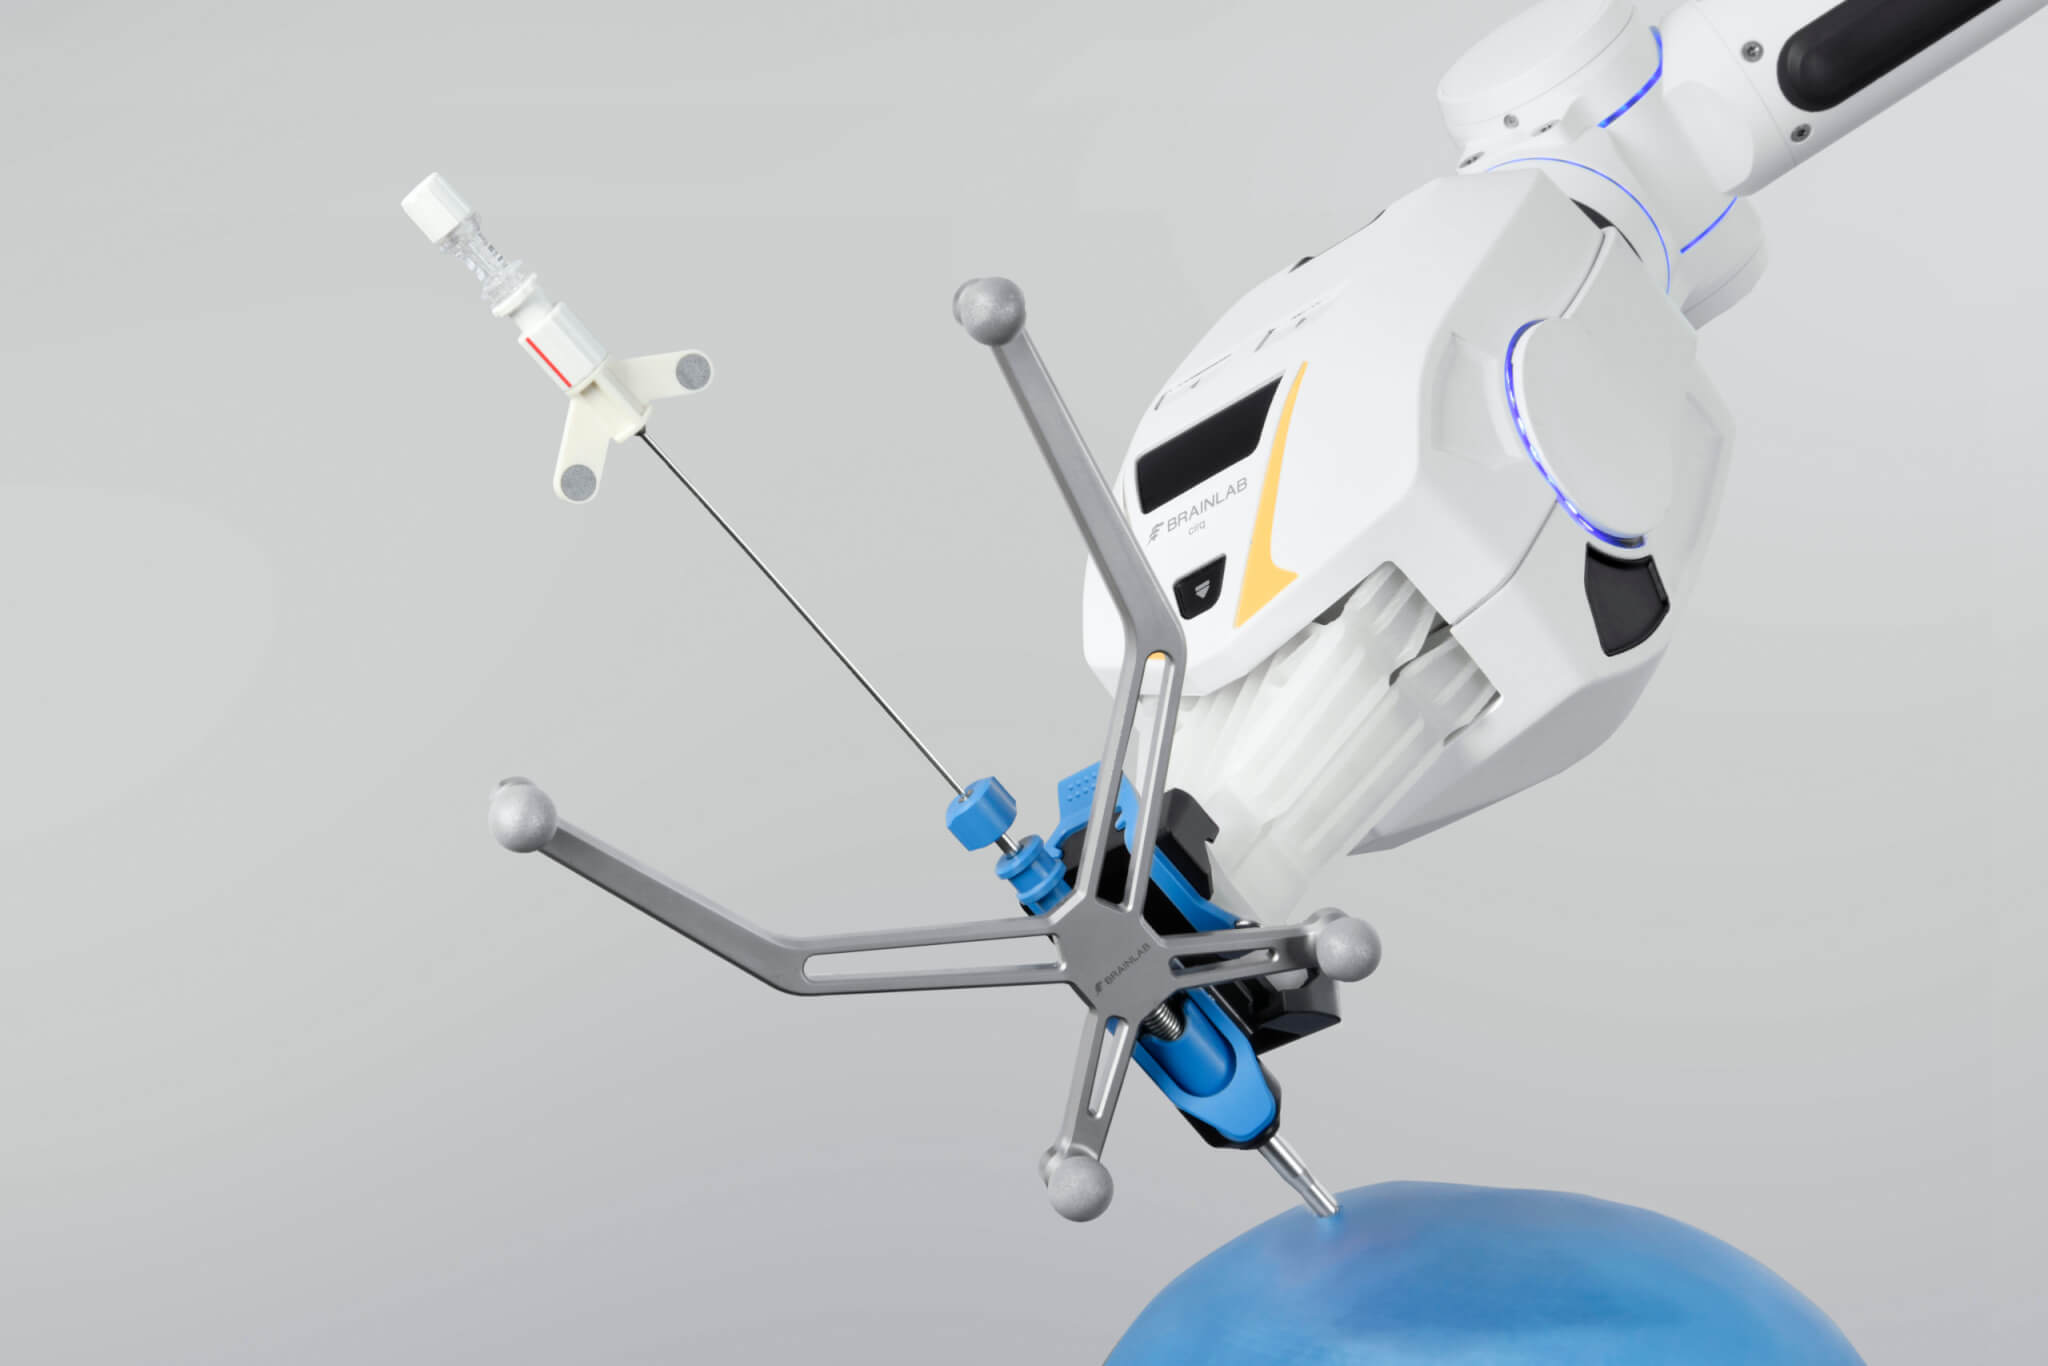 El módulo de cirugía craneal del brazo quirúrgico robótico sujeta una aguja de biopsia navegada desplazándose por una representación azul de un cerebro delante de un fondo gris claro